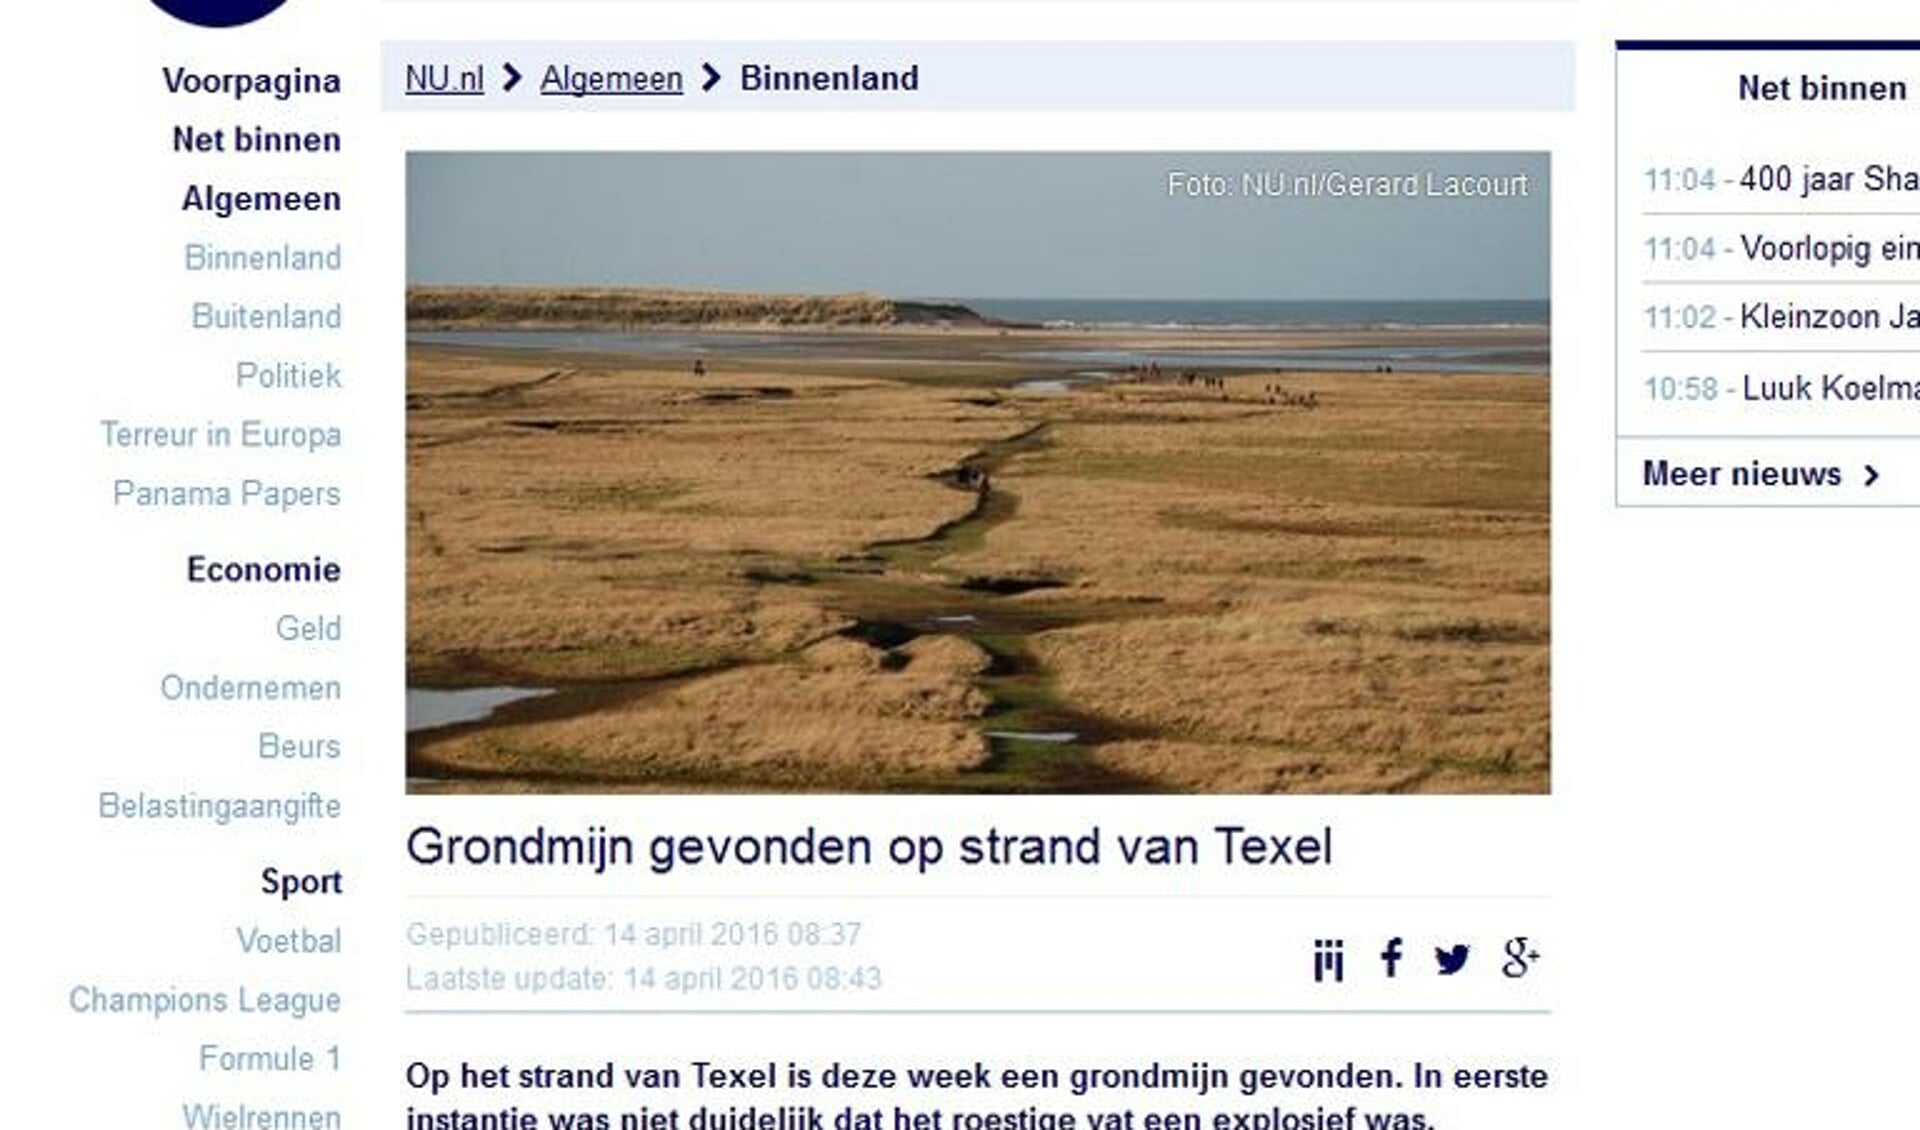 NU.nl maakte het wel erg bont door een foto van De Slufter bij het bericht te plaatsen.